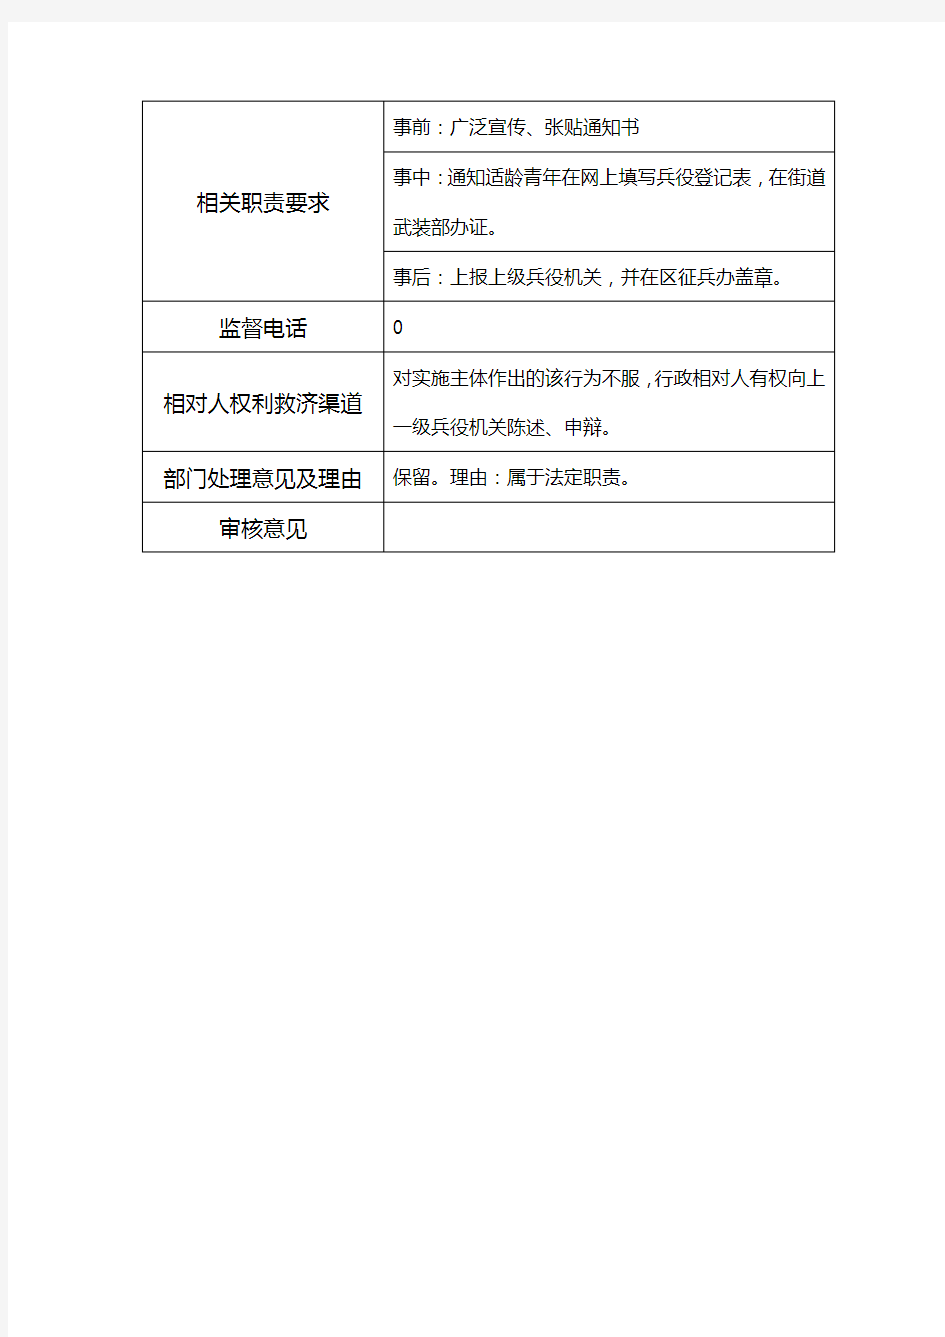 莲塘街道办事处行政服务事项登记表及流程图